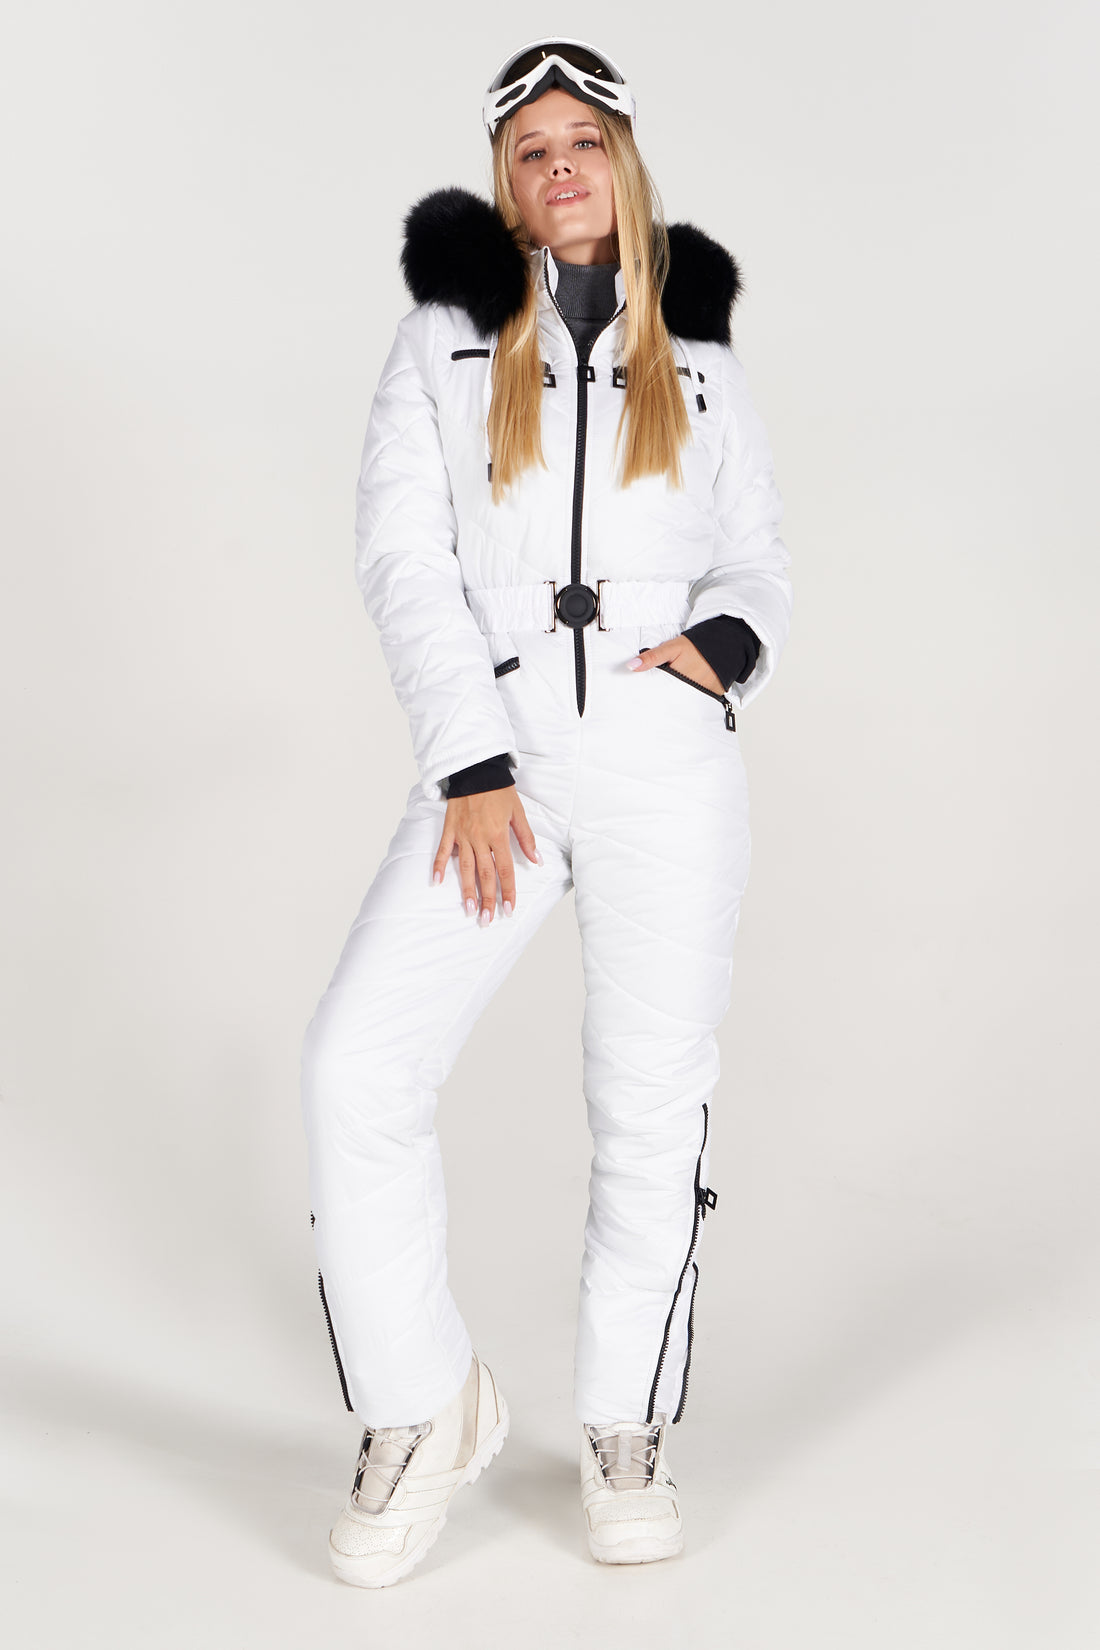 White ski suit one piece fr women ELIAS - WHITE snowsuit ski clothes women